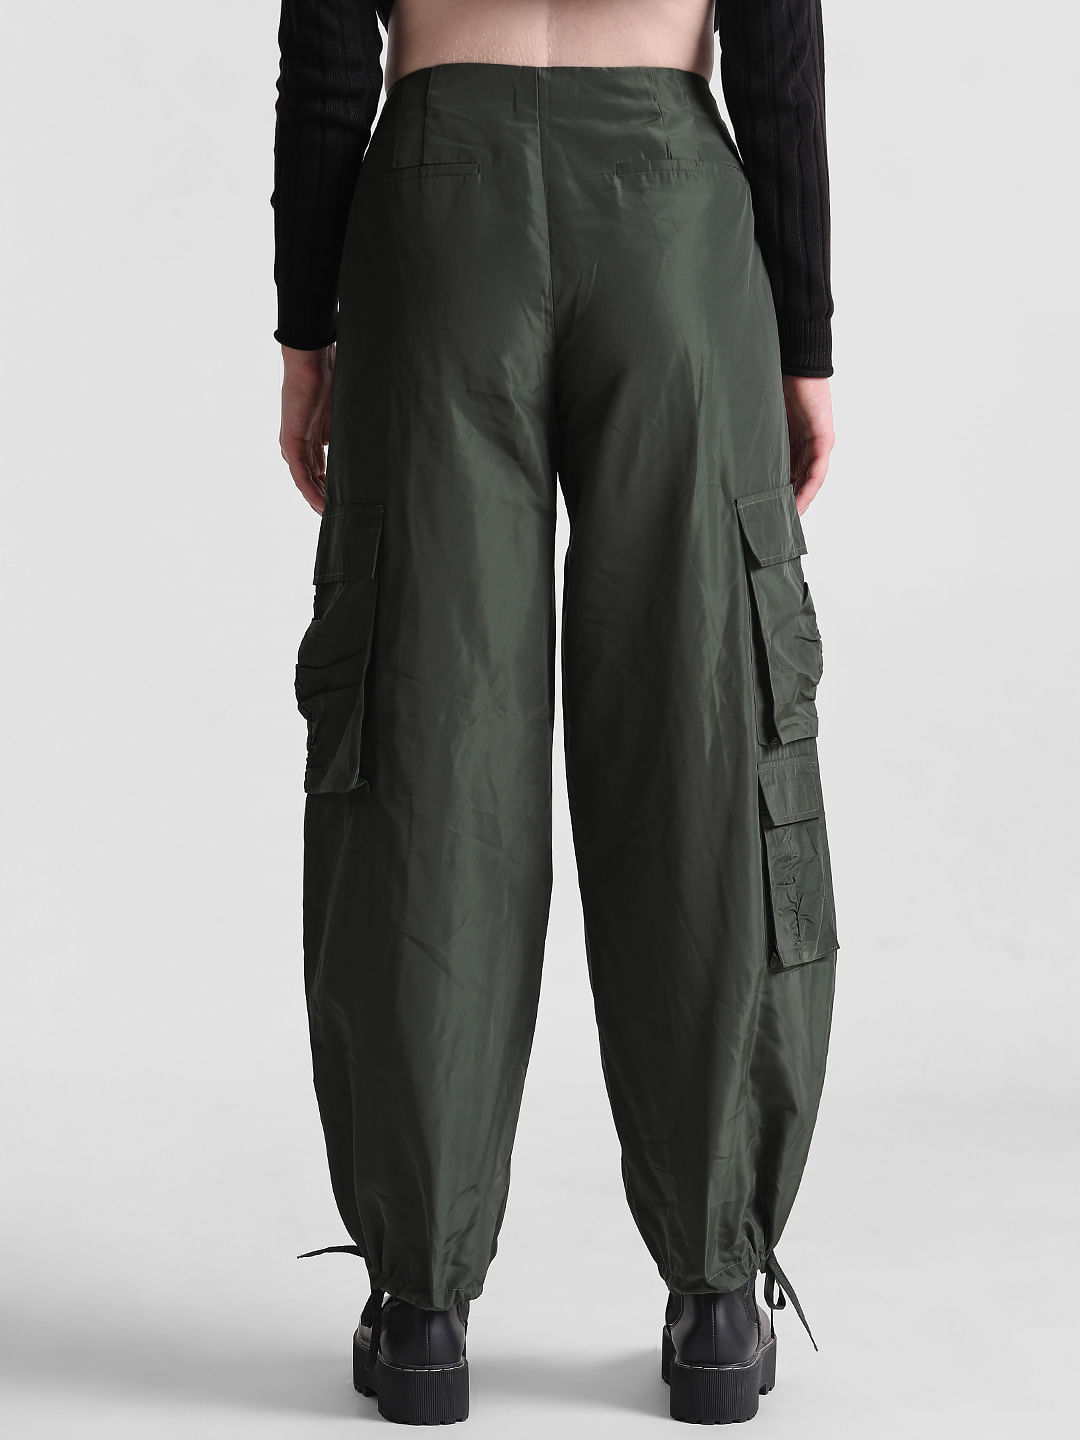 Men's Green Cargo Pants | Nordstrom